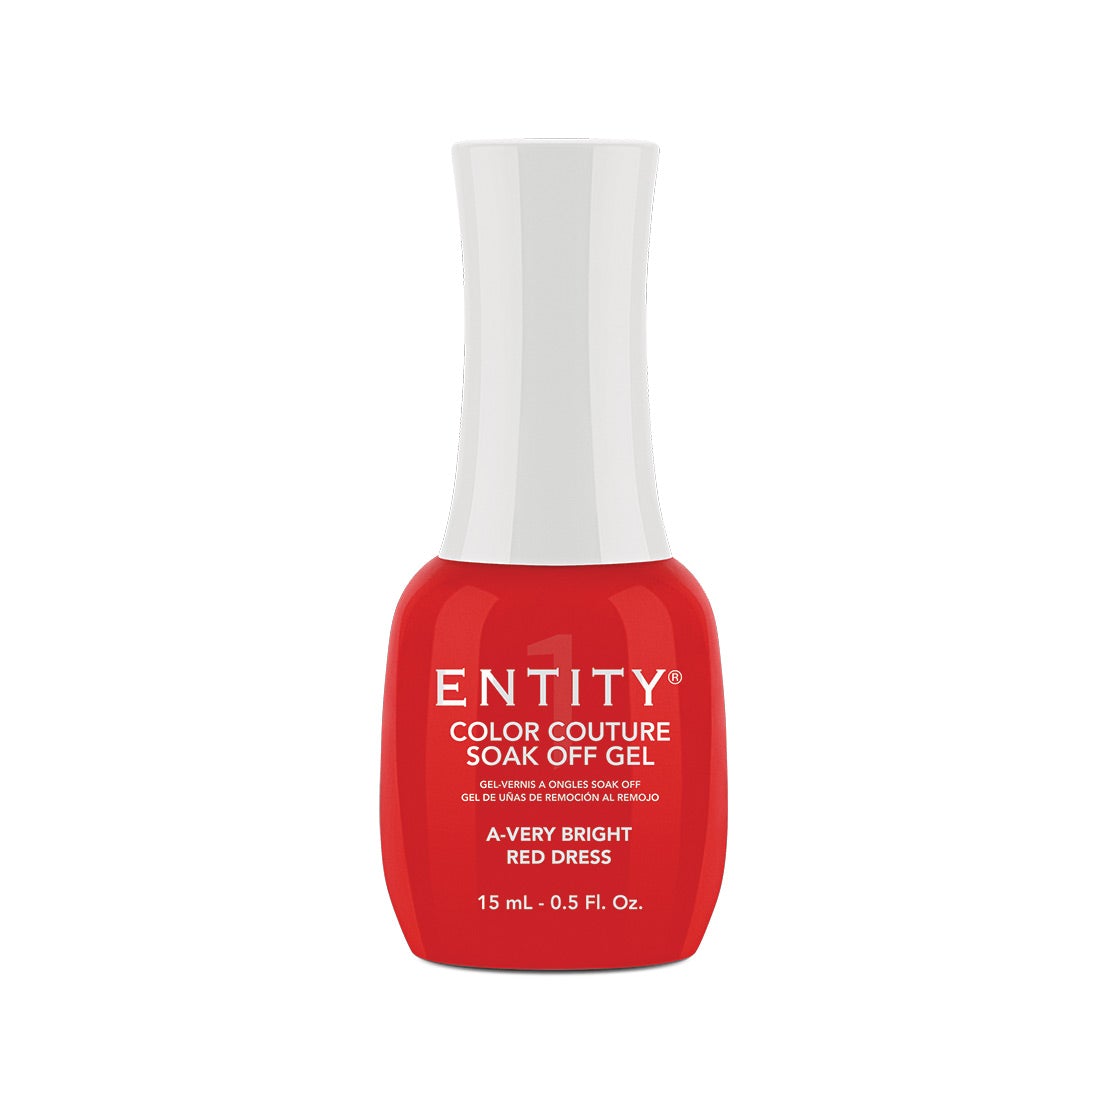 Entity Gel Soak Off - A-Very Bright Red Dress 15 mL/0.5 Fl. Oz